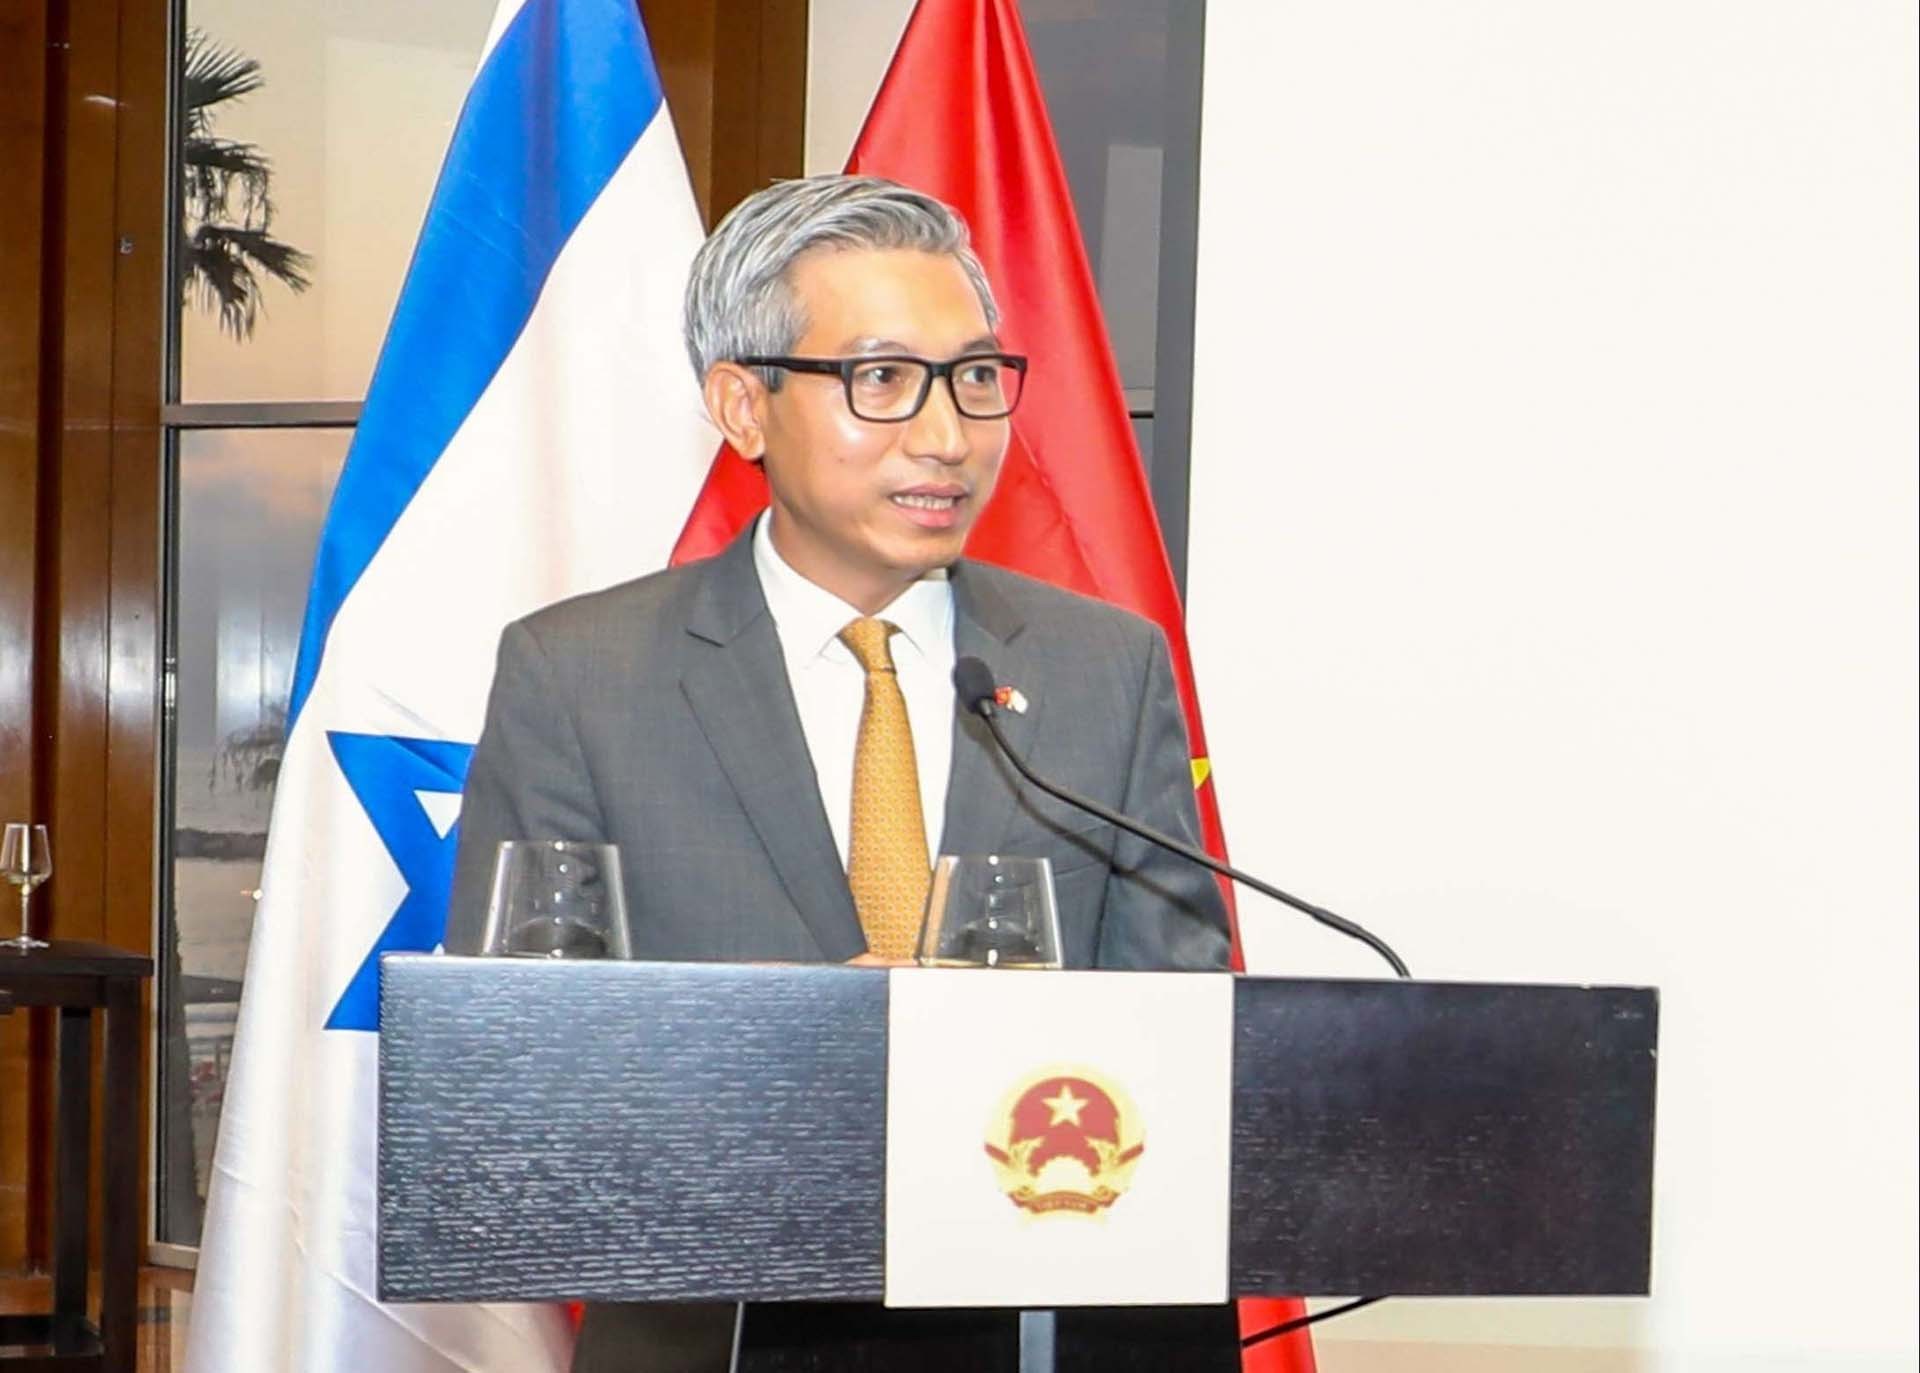 Thúc đẩy quan hệ hữu nghị và hợp tác nhiều mặt giữa Việt Nam và Israel